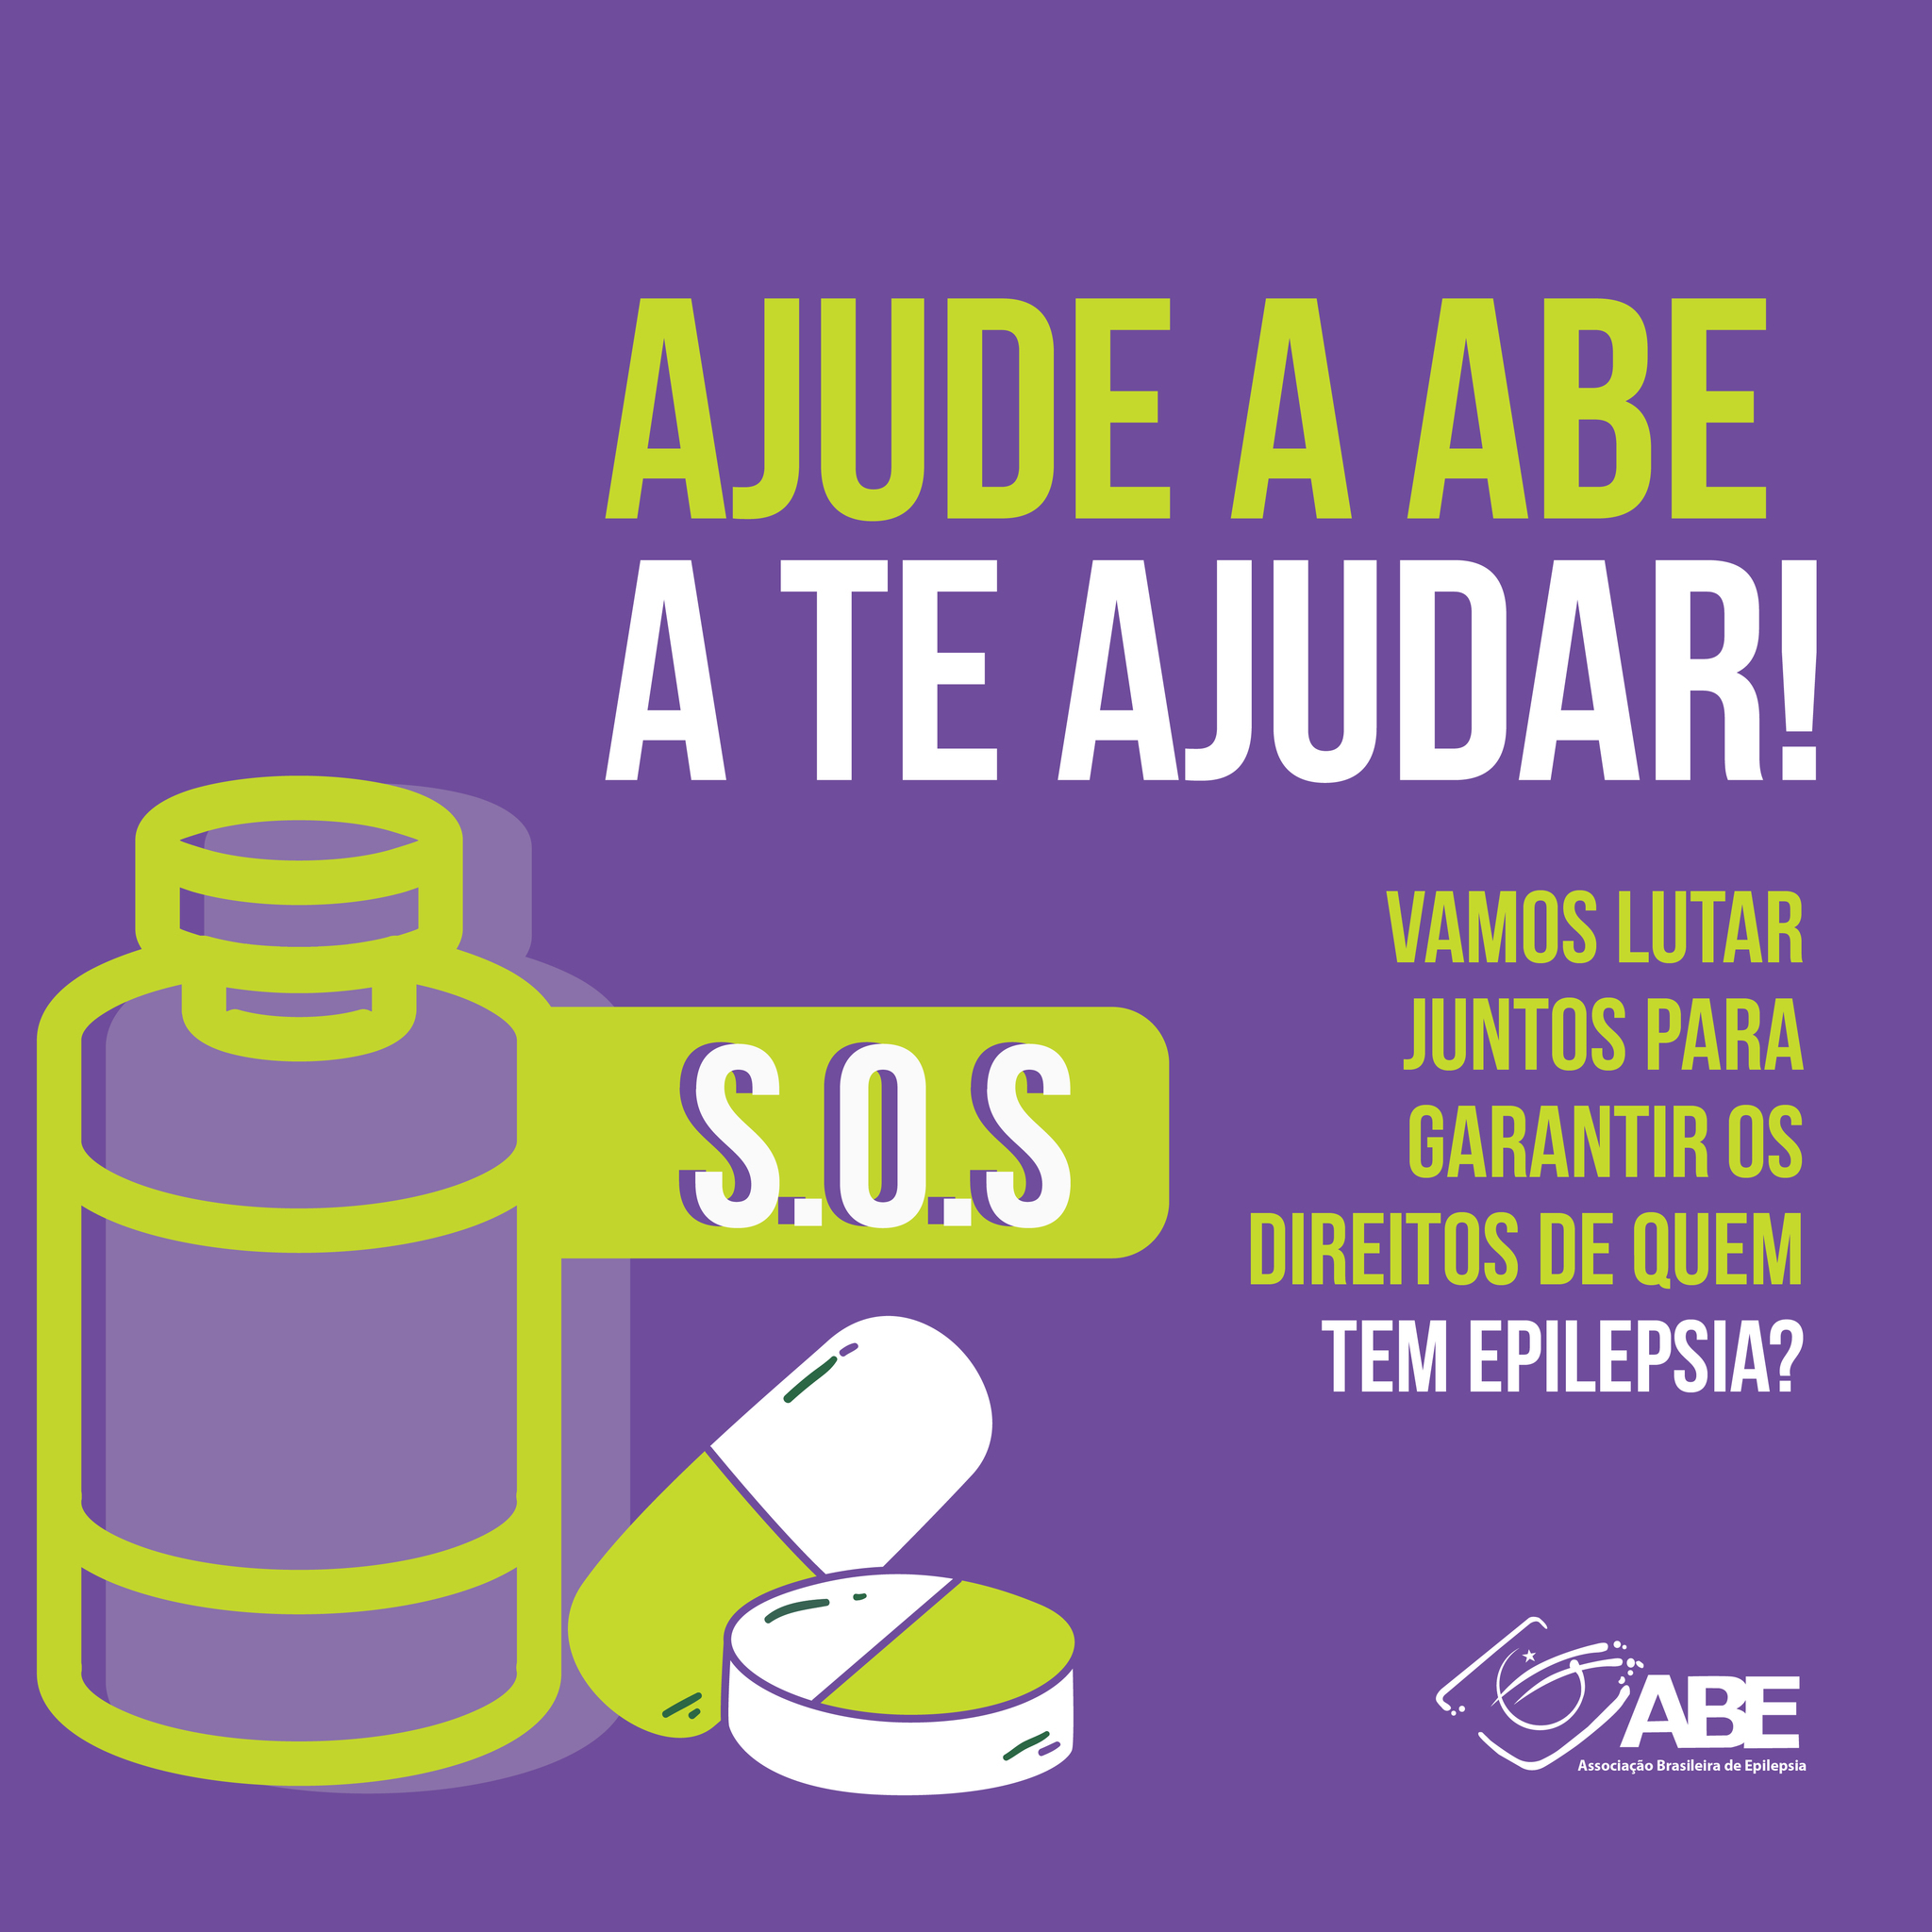 Falta de medicamentos no SUS faz ABE criar ação para garantir o direito da pessoa com epilepsia